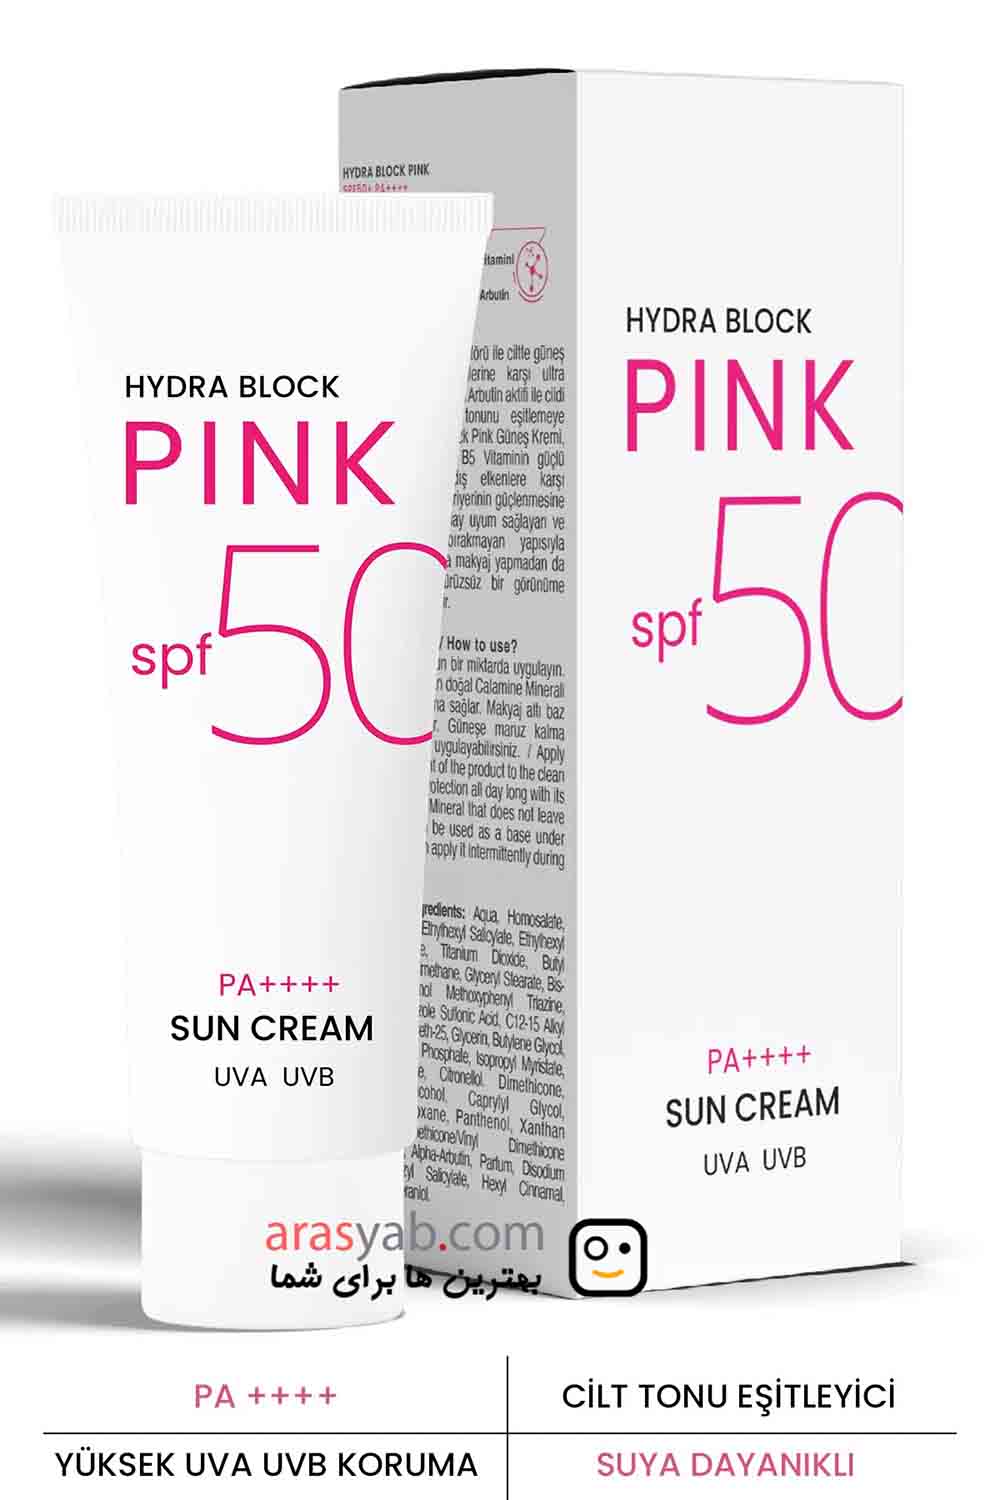 کرم ضد آفتاب پروکسین مدل Hydra block pink حاوی spf 50 و خاصیت ضد لک حجم ۵۰ میل